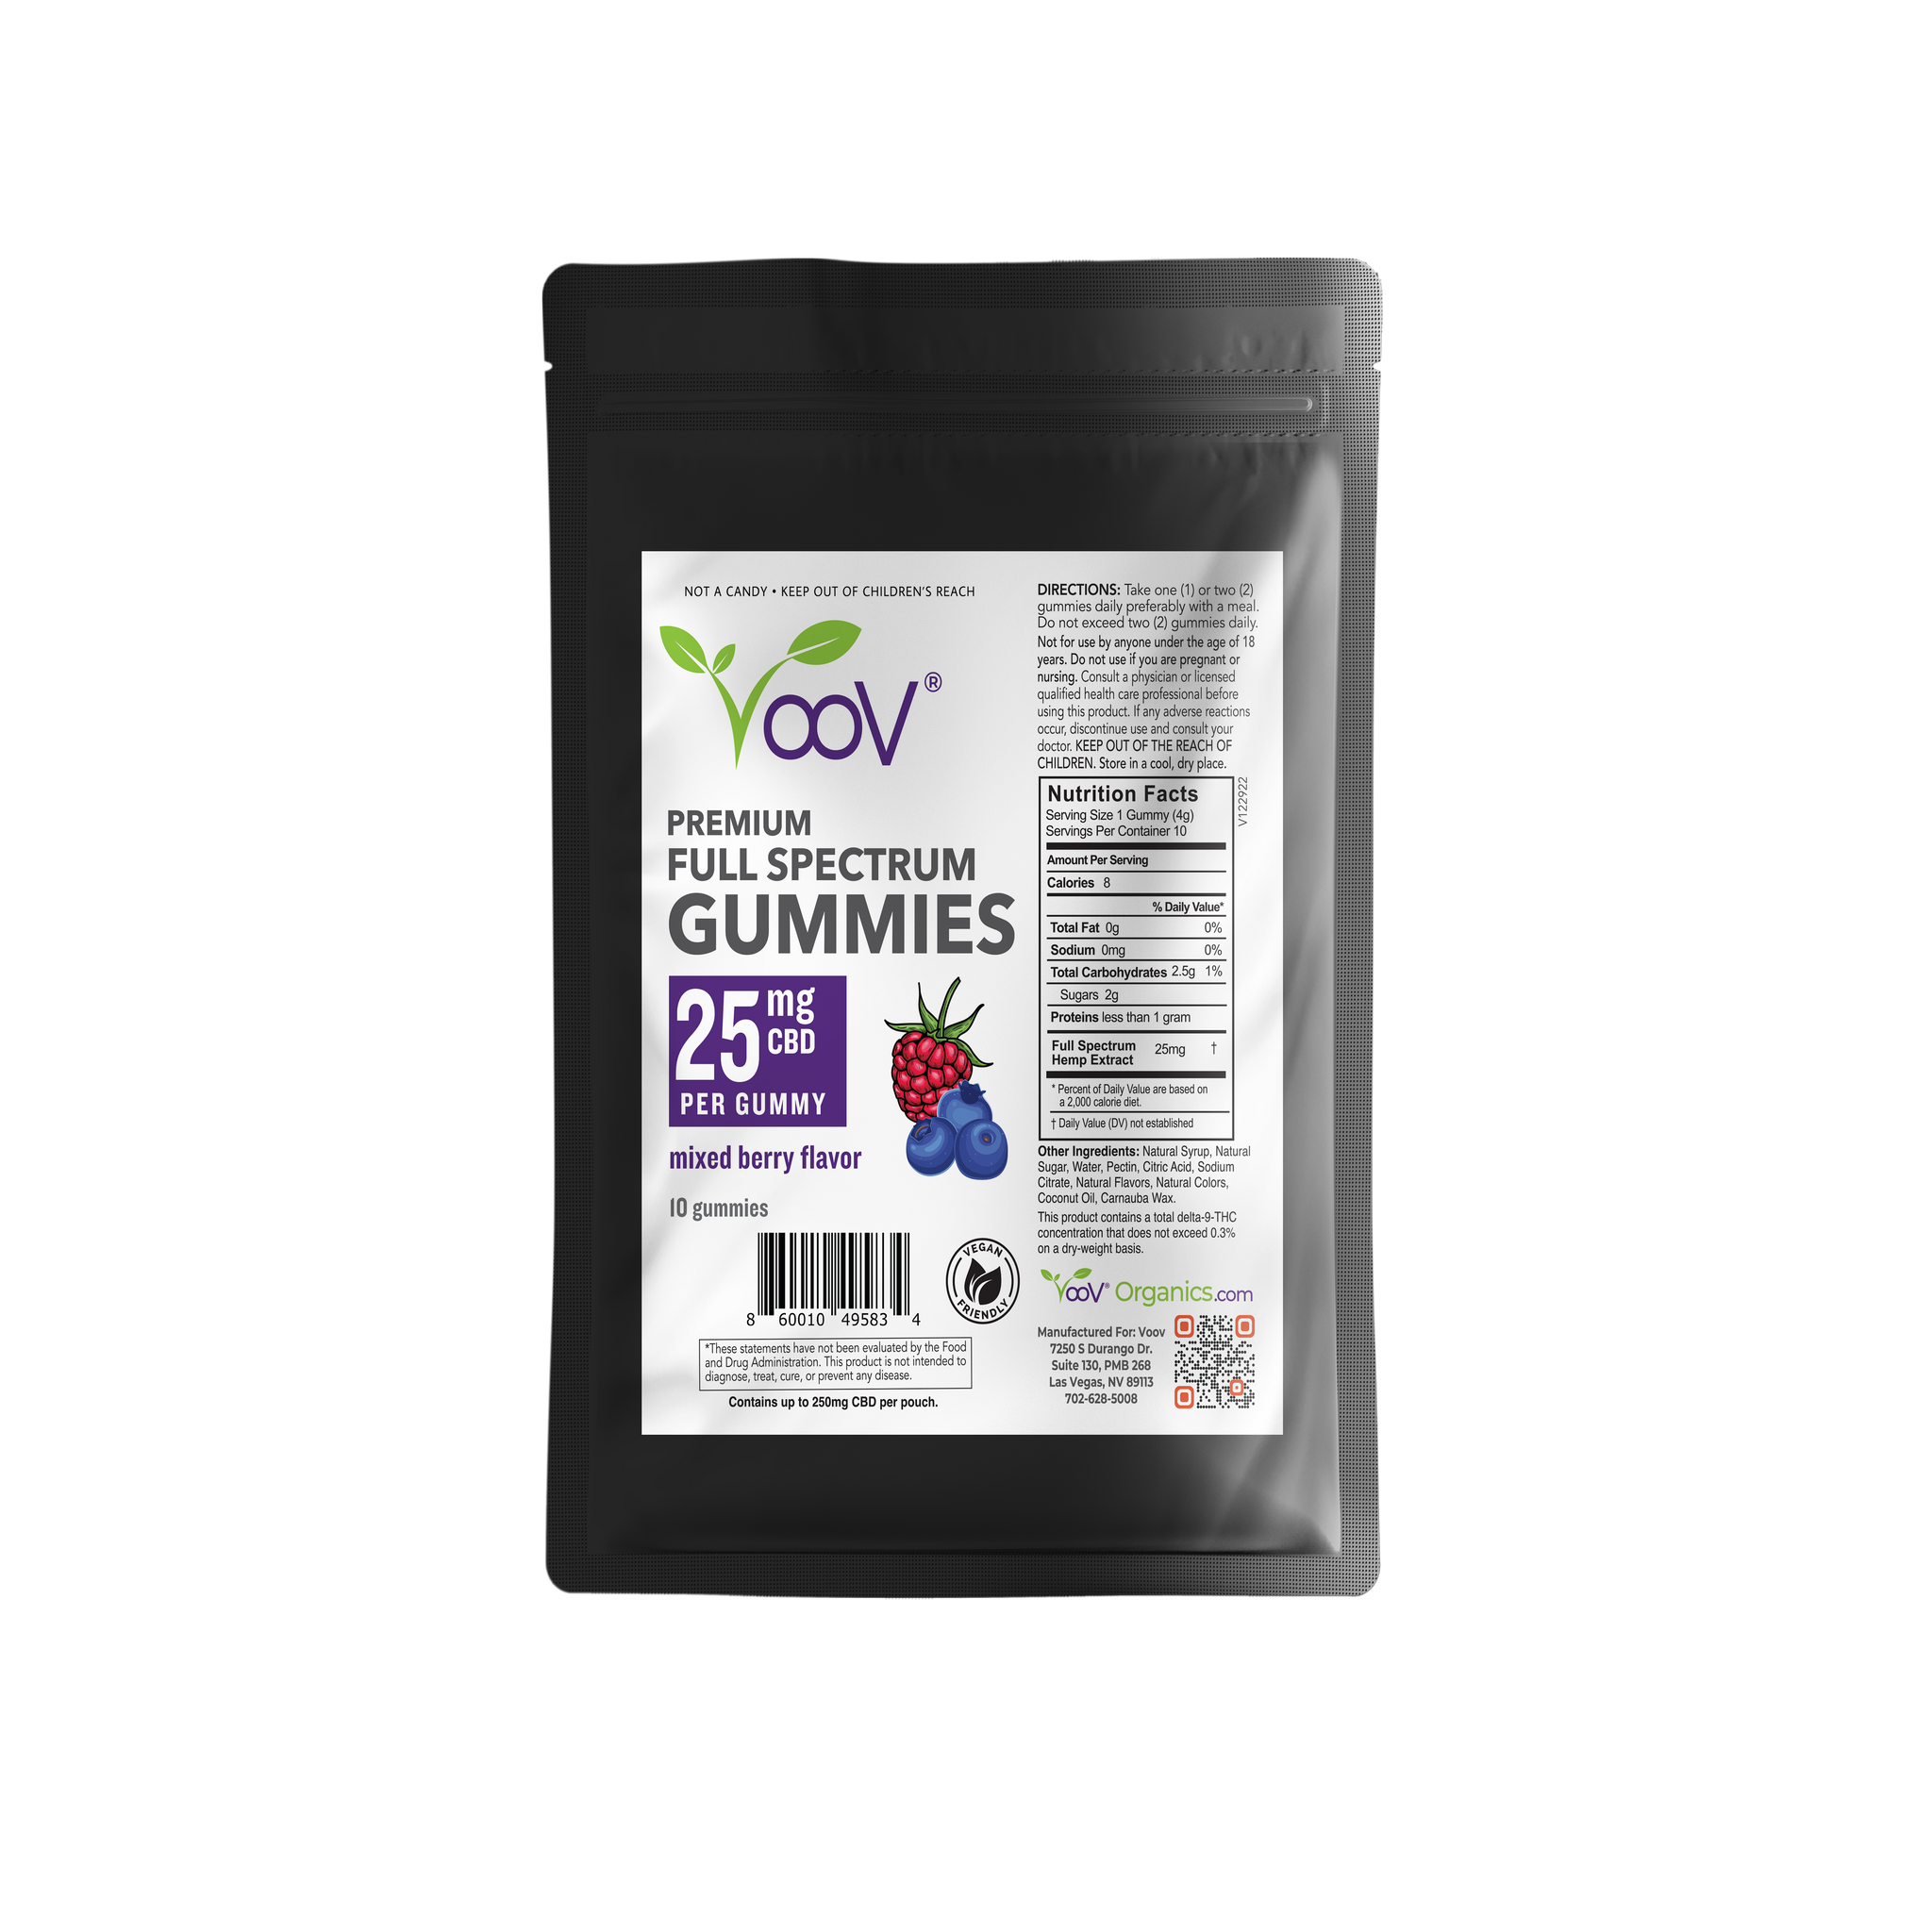 Voov® Premium Full Spectrum Gummies - Mixed Berry Flavor 25mg CBD